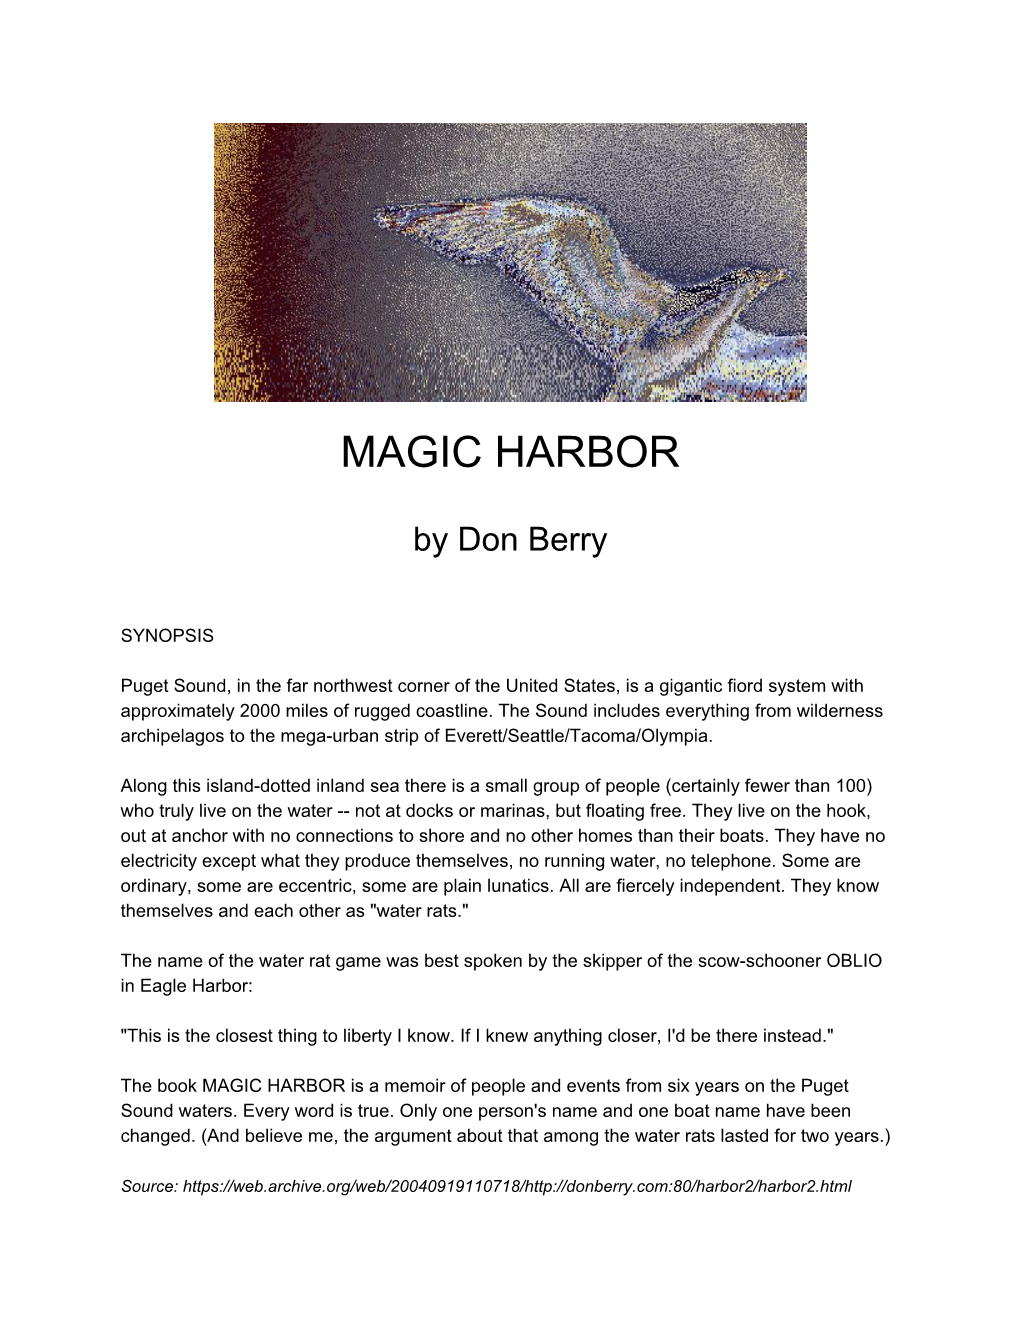 Magic Harbor